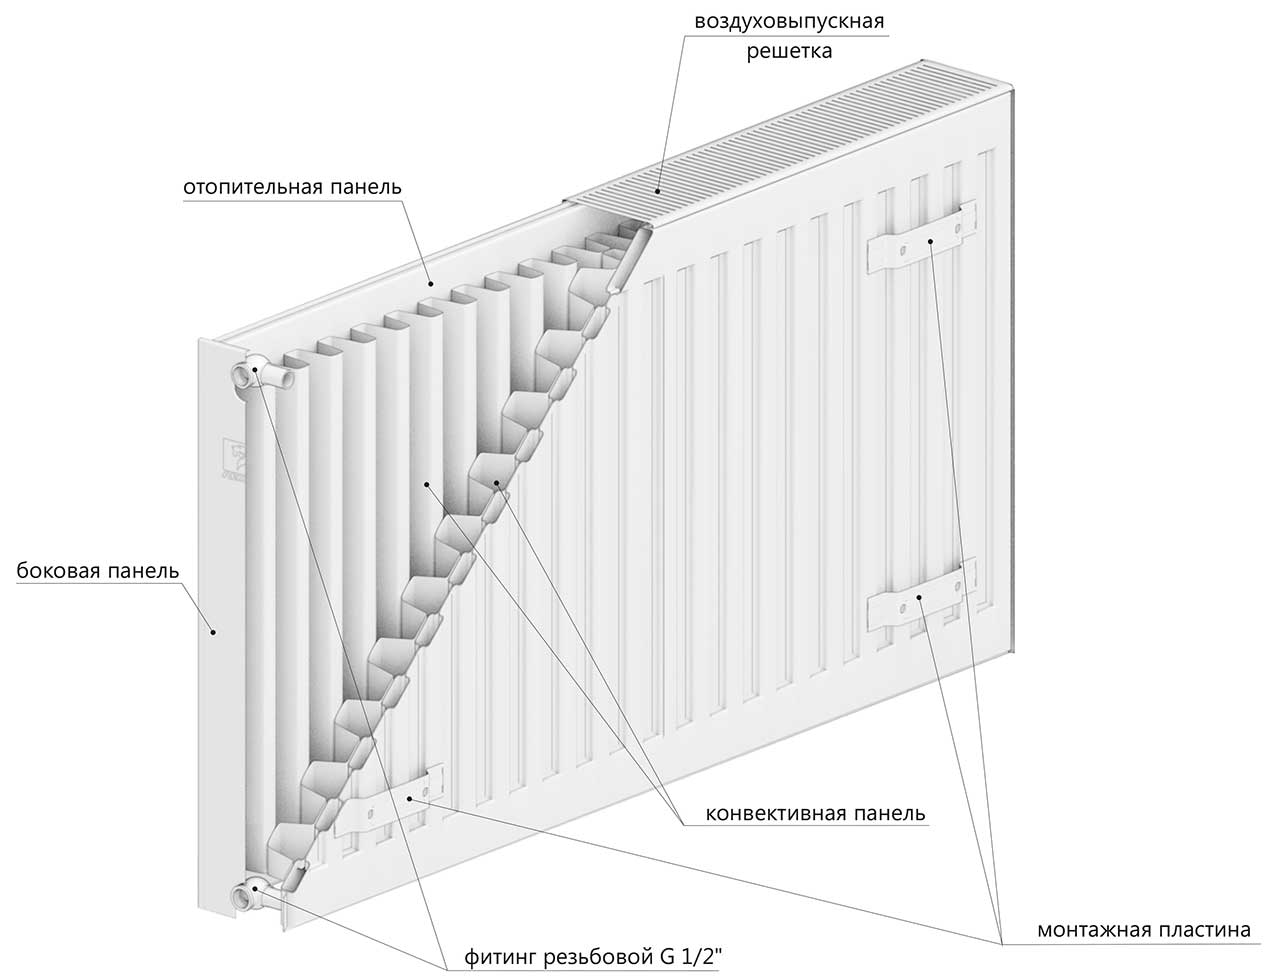 Стальной панельный радиатор DD PREMIUM TIP 22 500x1200 (VaillantGroup)